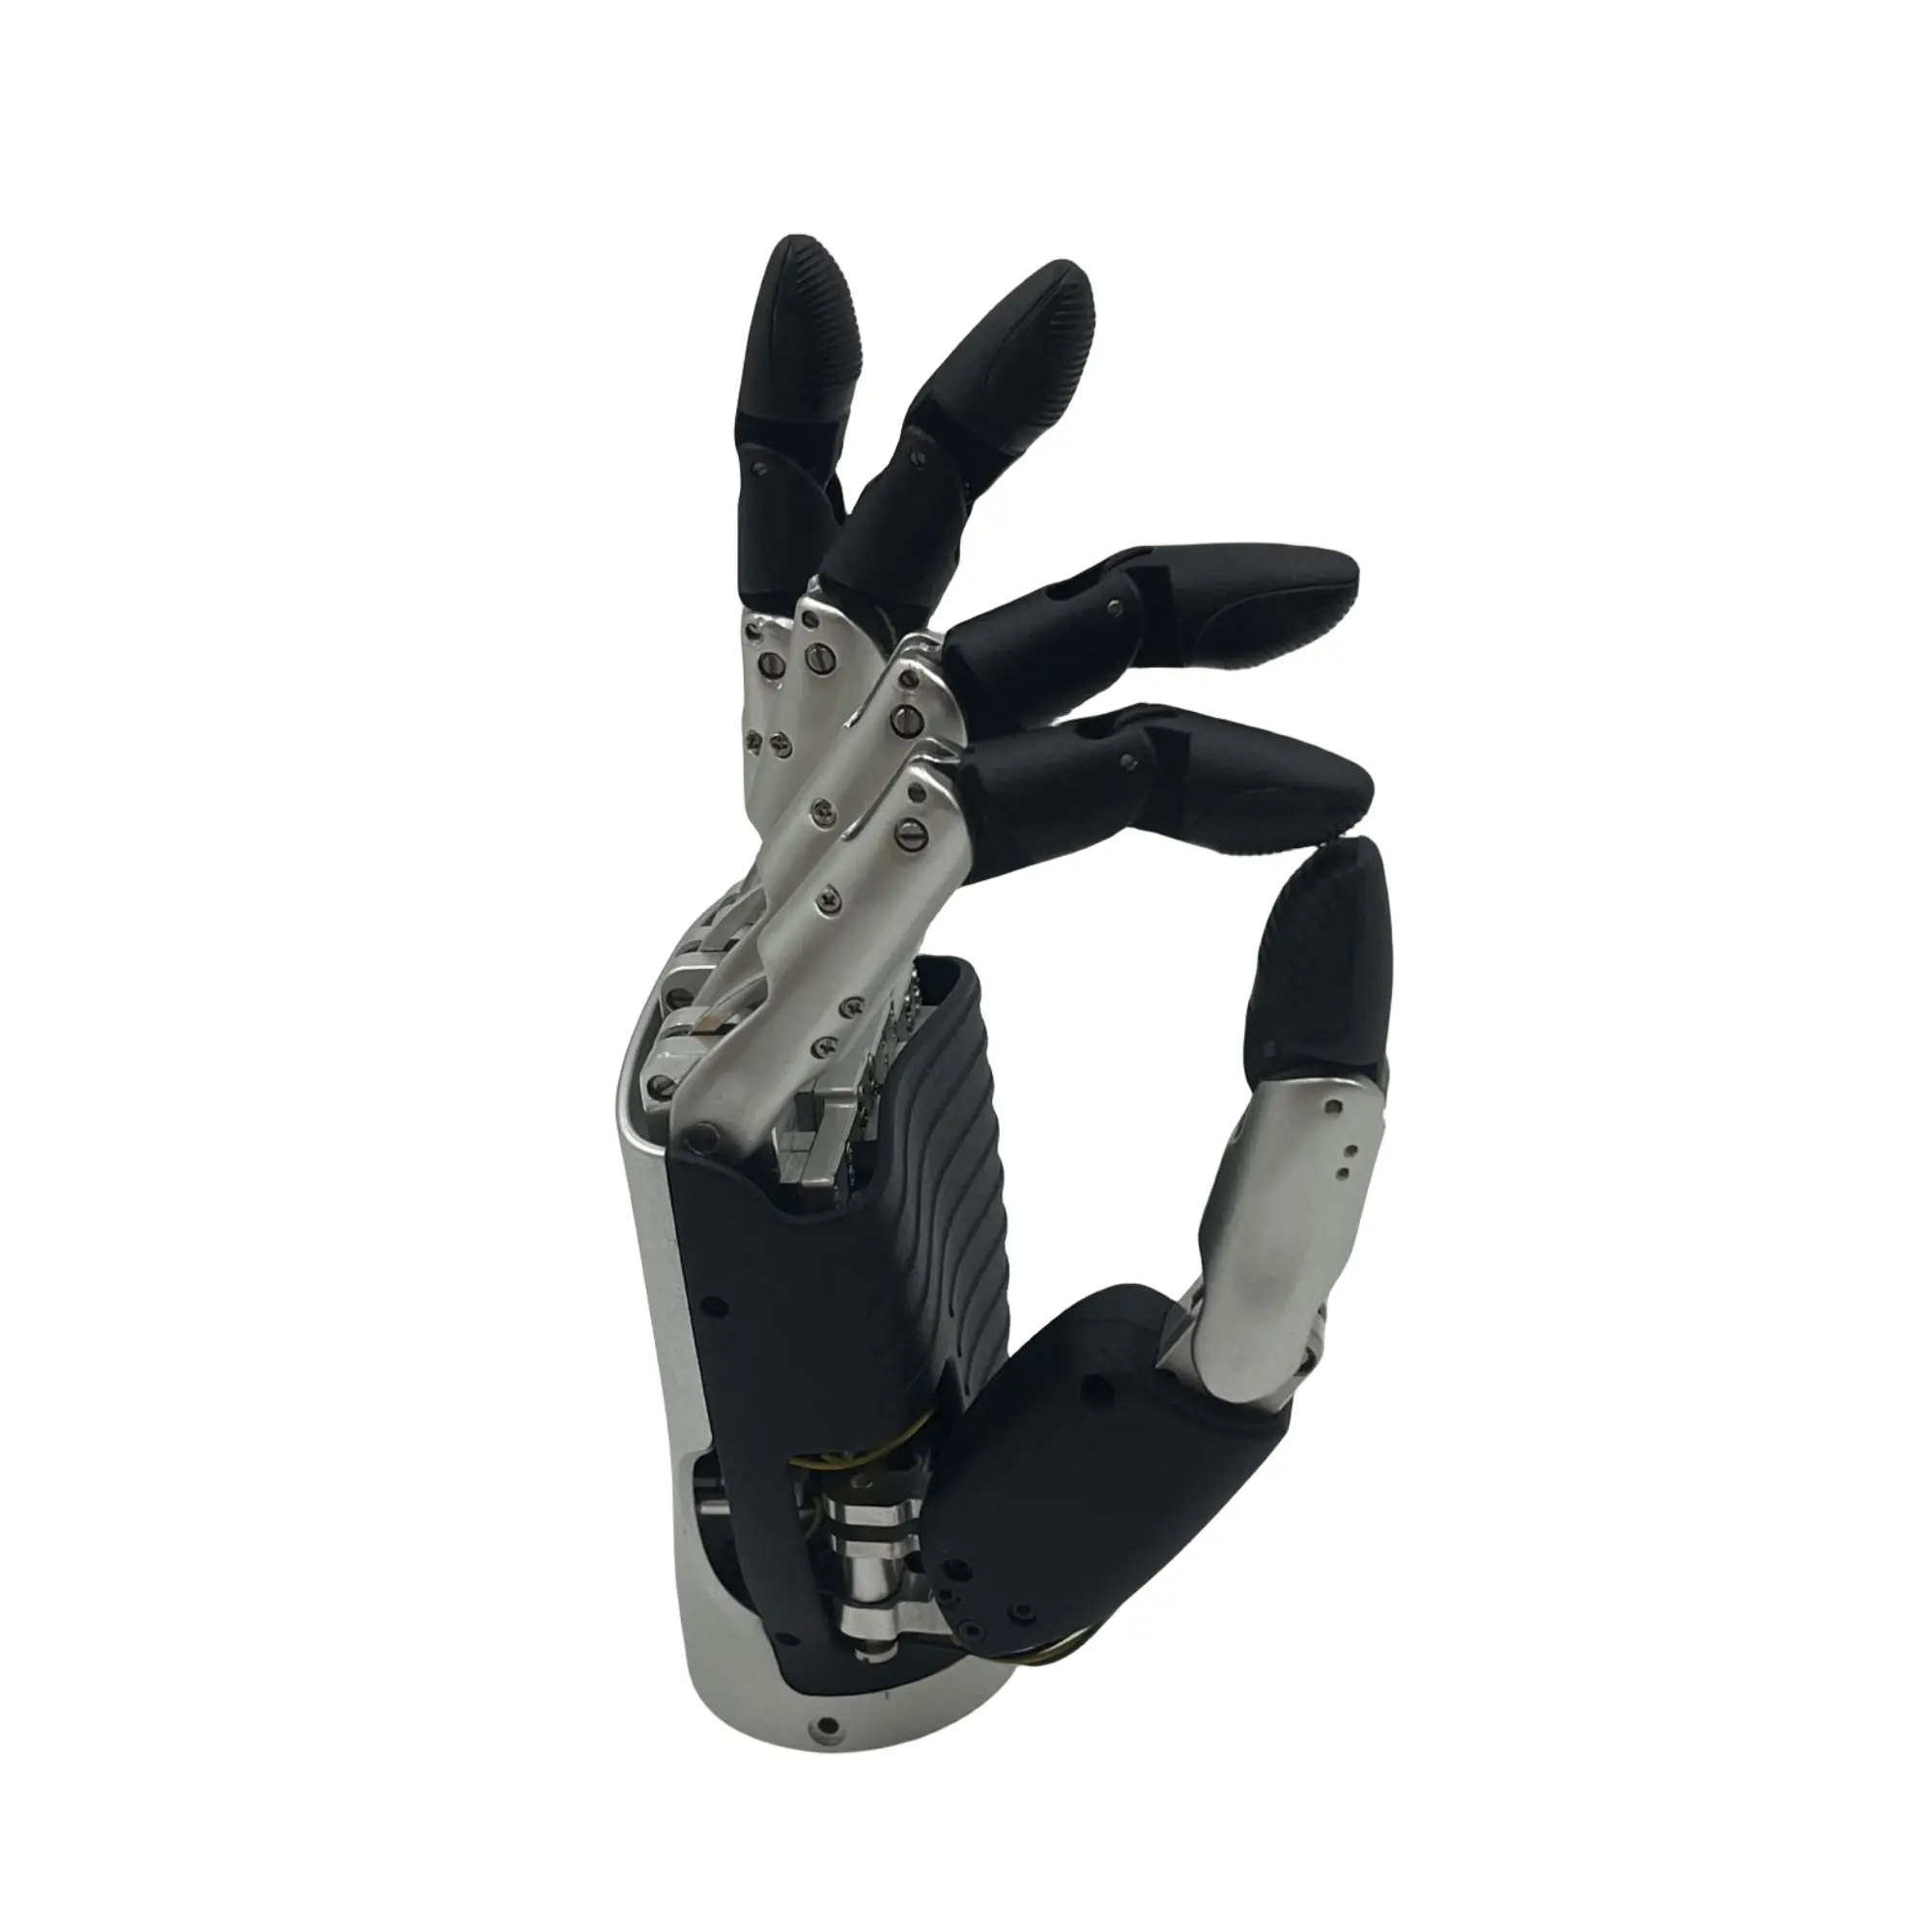 Articulación de mano biomimética 6DOF, mano diestra de cinco dedos, articulación de mano de robot biónico